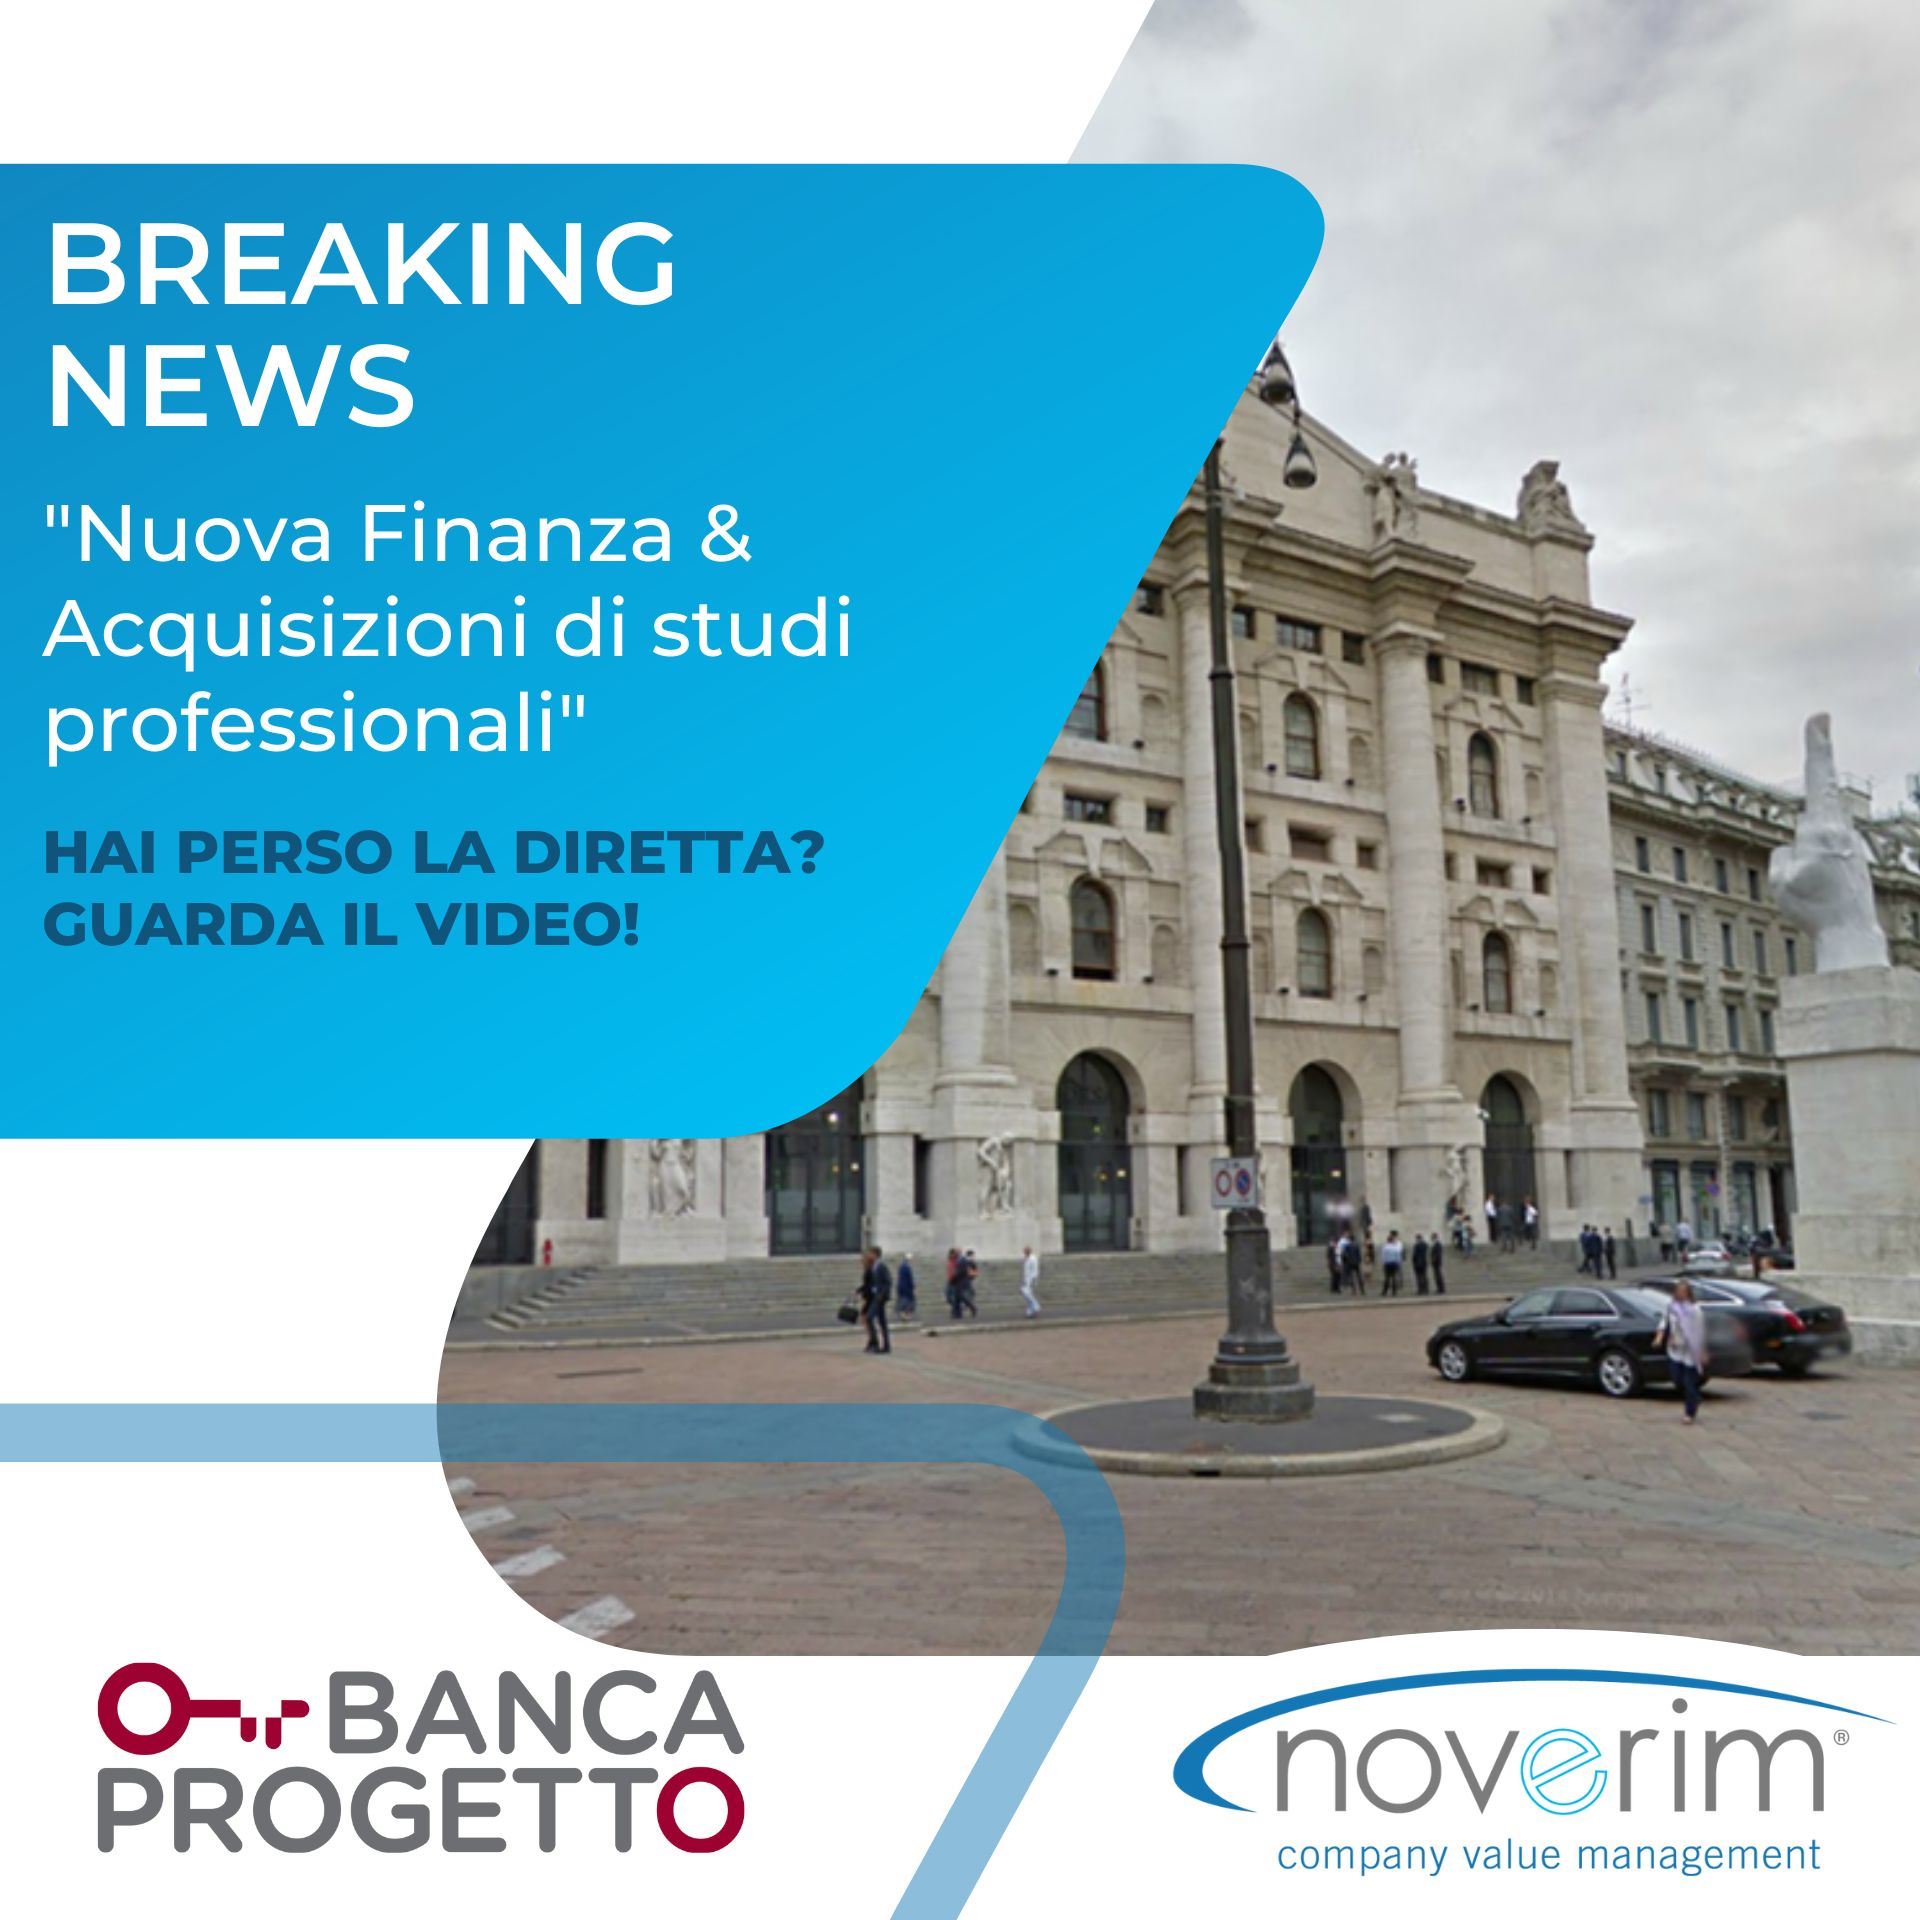 Breaking News - Nuova Finanza & Acquisizioni Studi Professionali